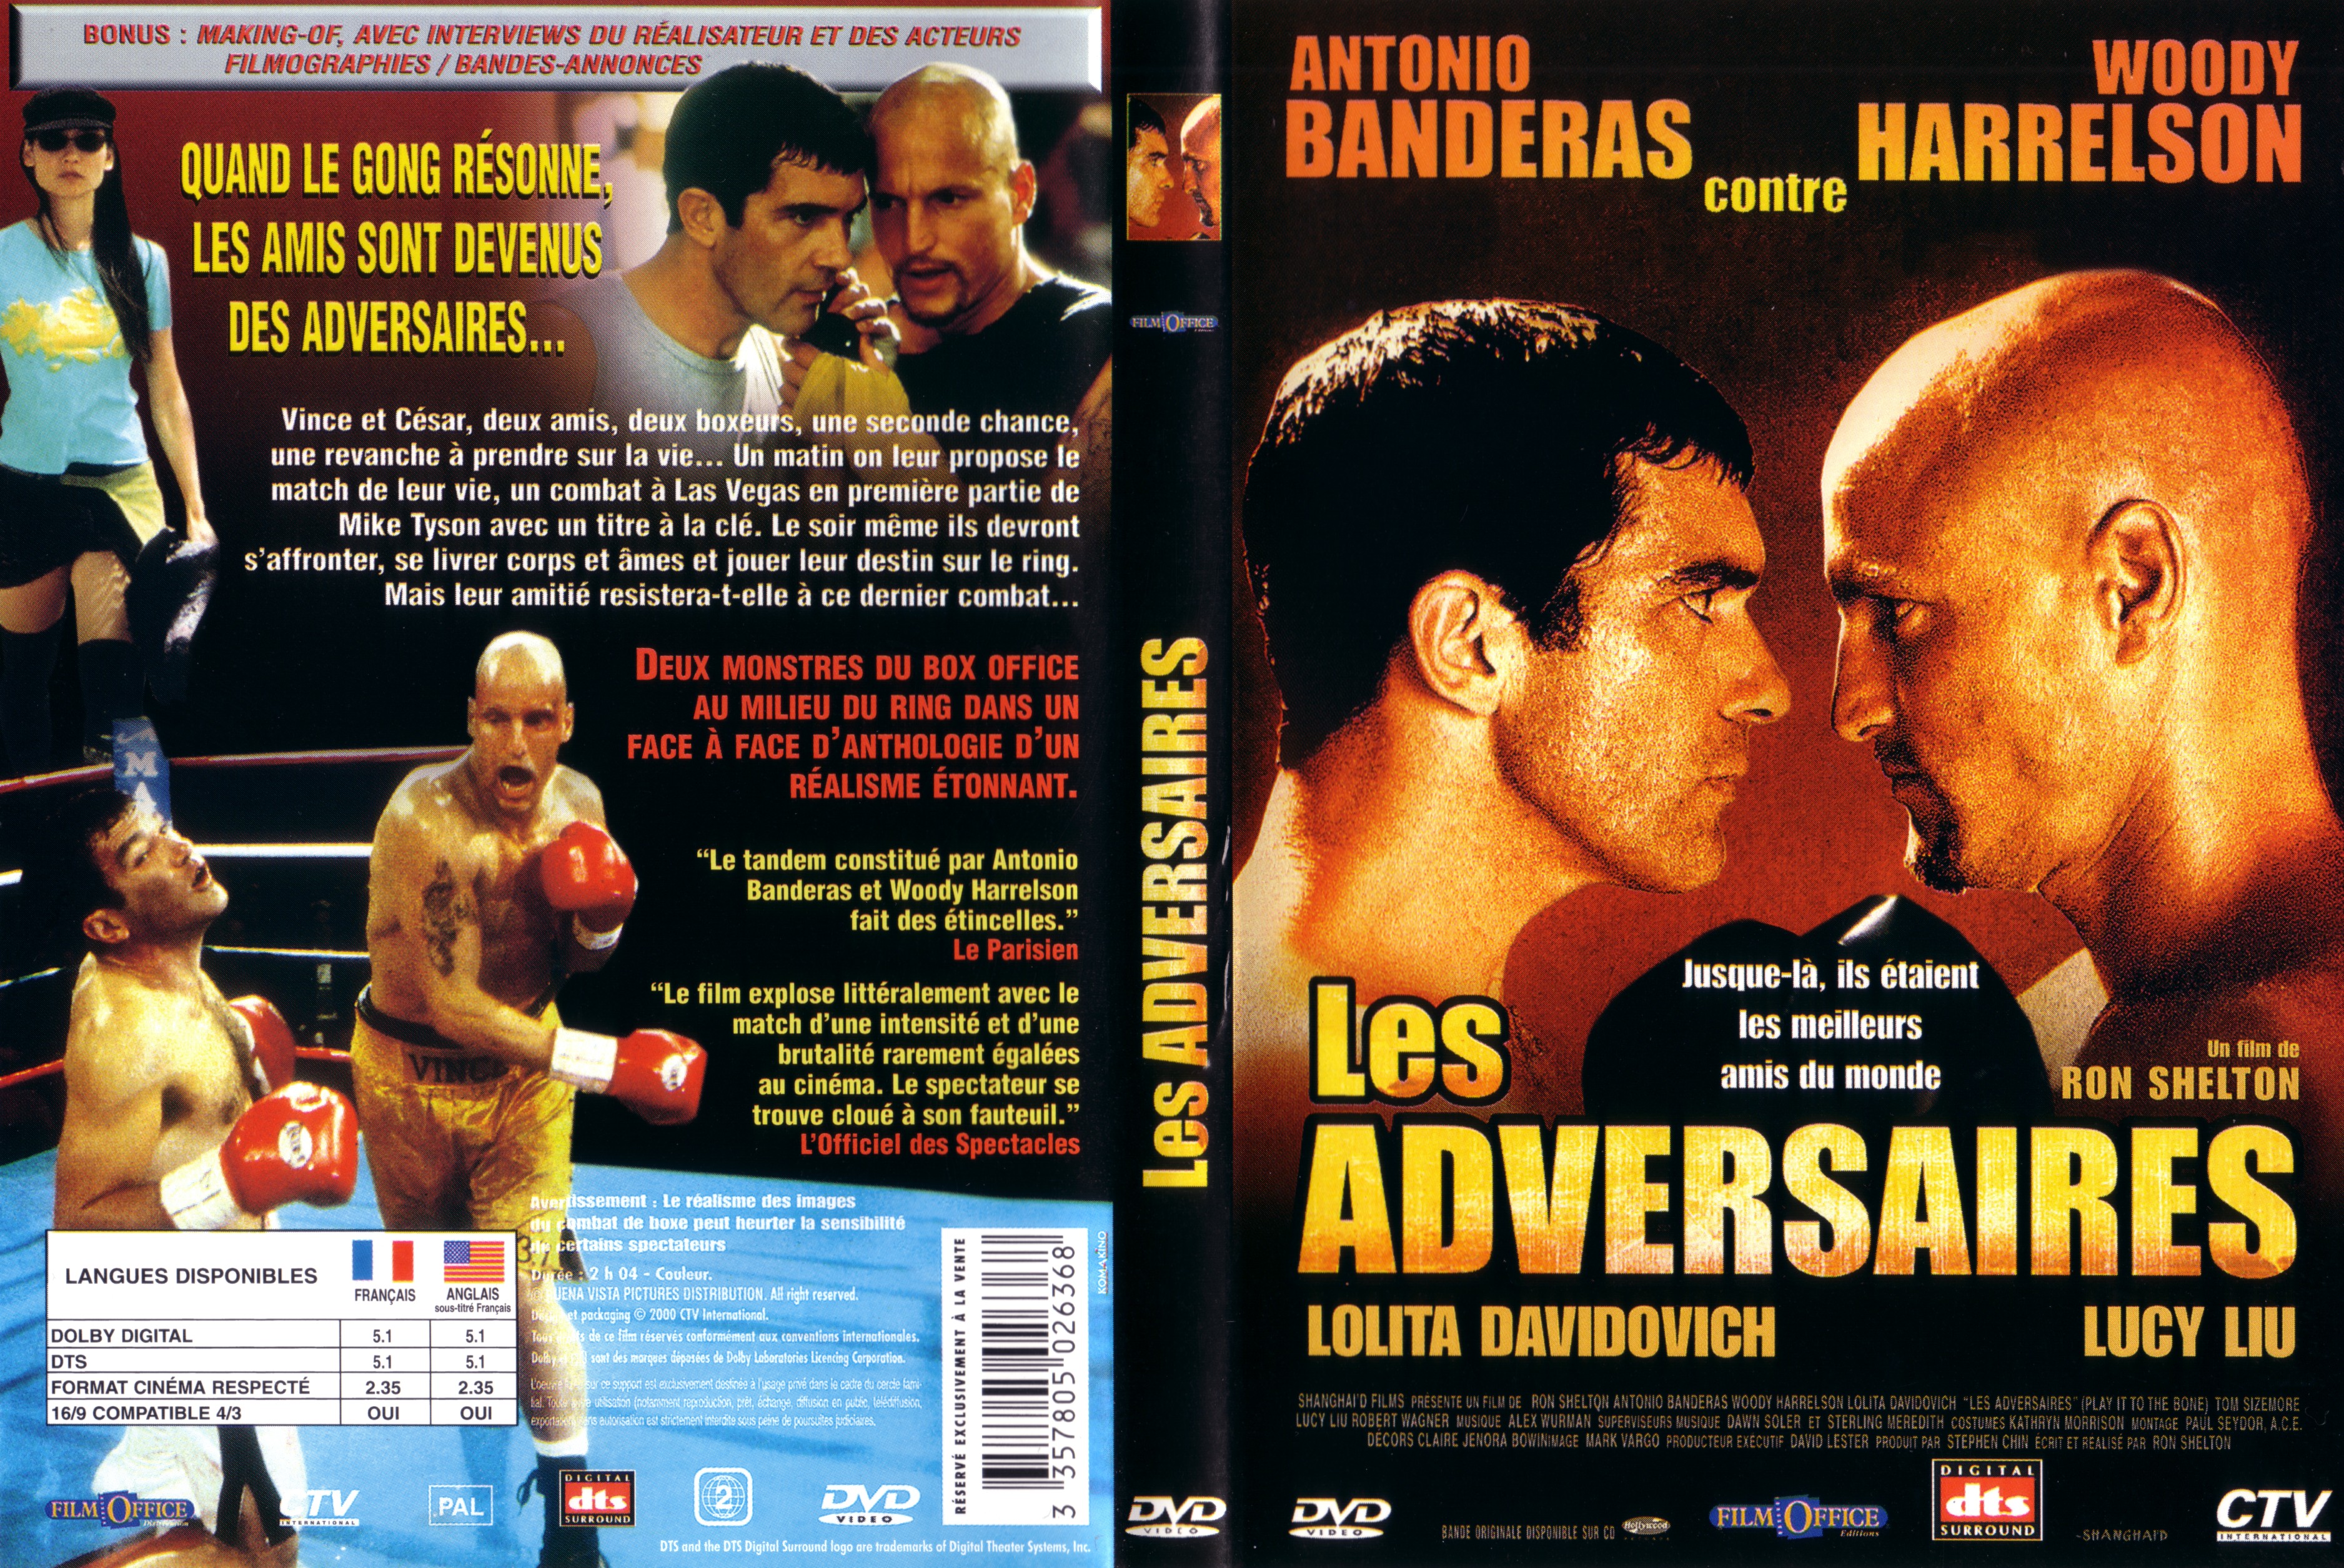 Jaquette DVD Les adversaires v2